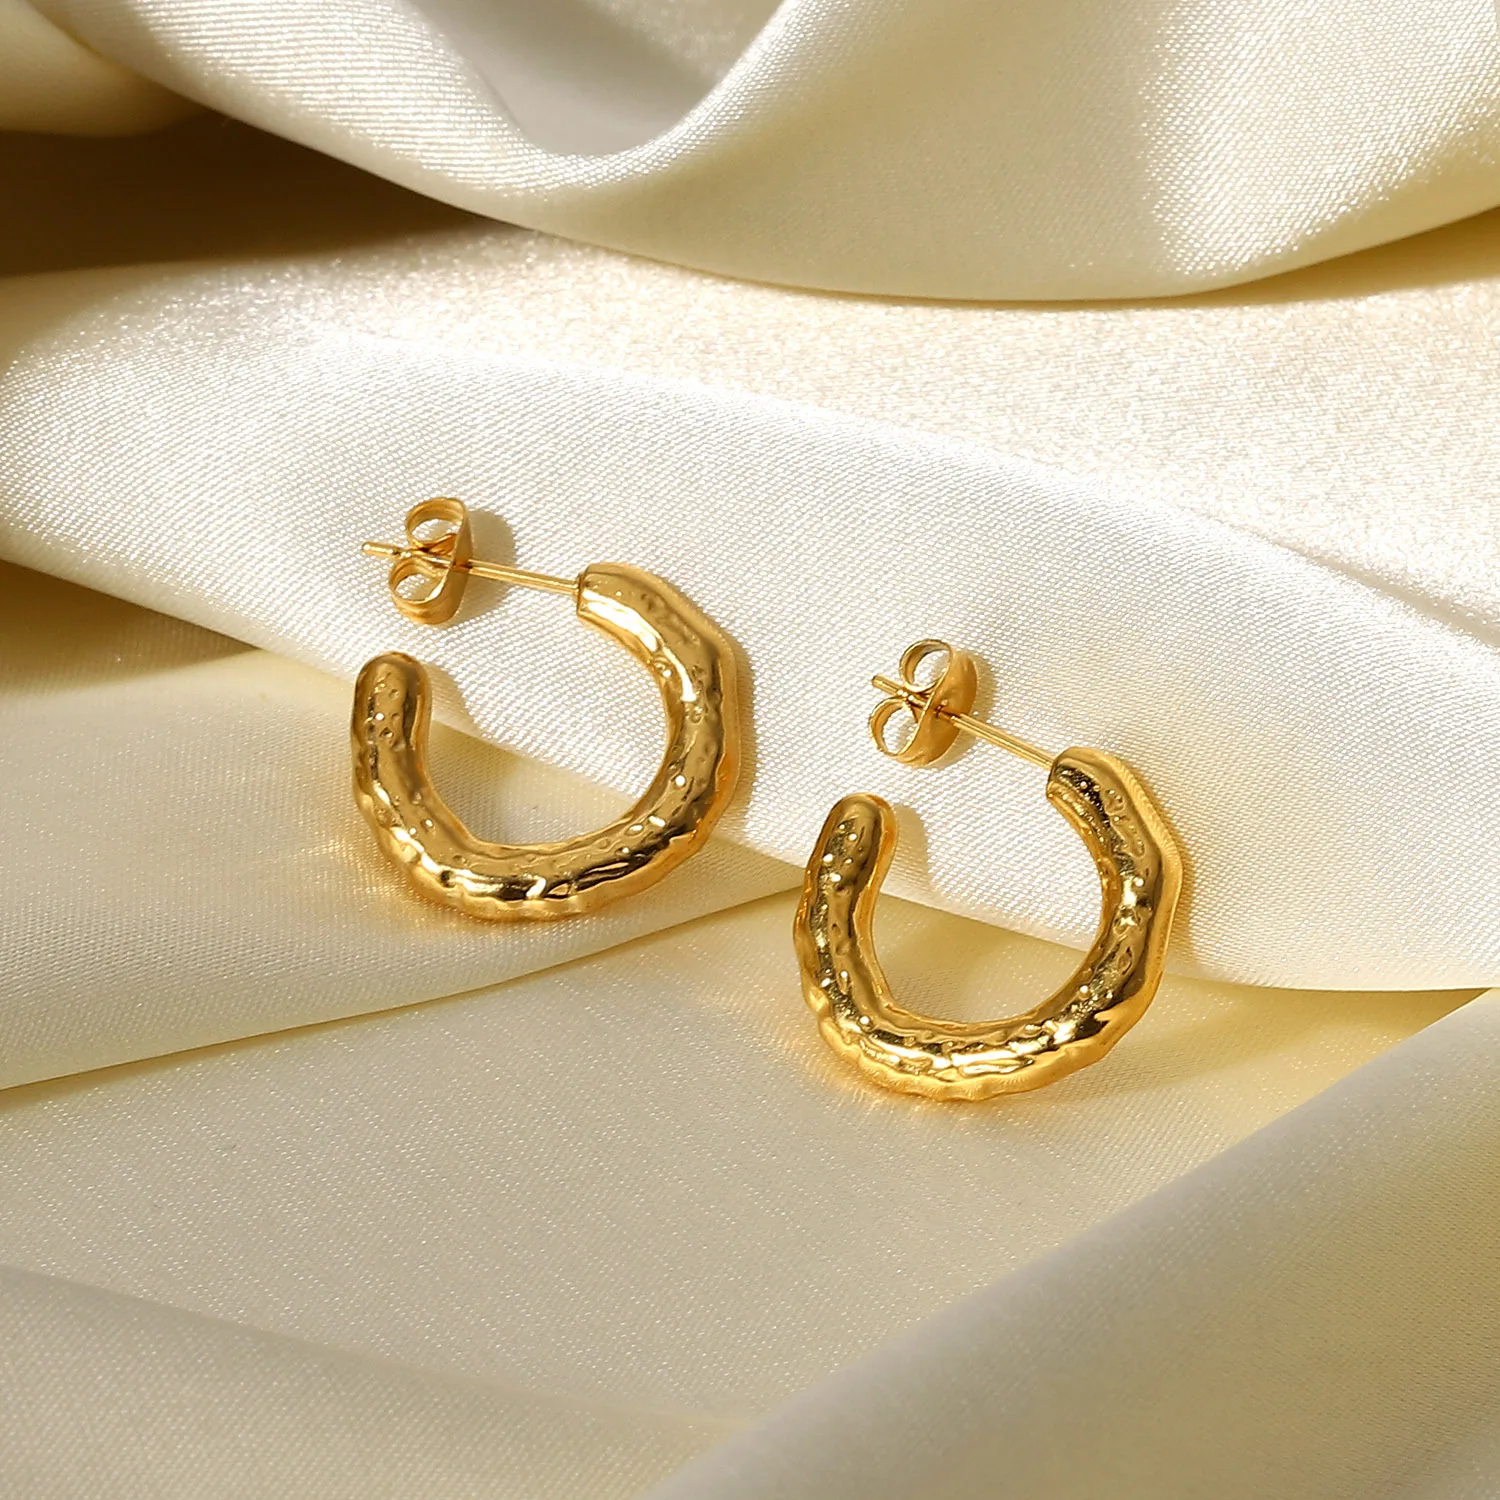 Wholesale Designer Inspired Earrings Lava Shaped Stud 18k Gold Earring  Stainless Steel Hammered Chunky Hoop Earrings For Women - Buy Wholesale  Designer Inspired Earrings,18k Gold Earring,Chunky Hoop Earrings For Women  Product on